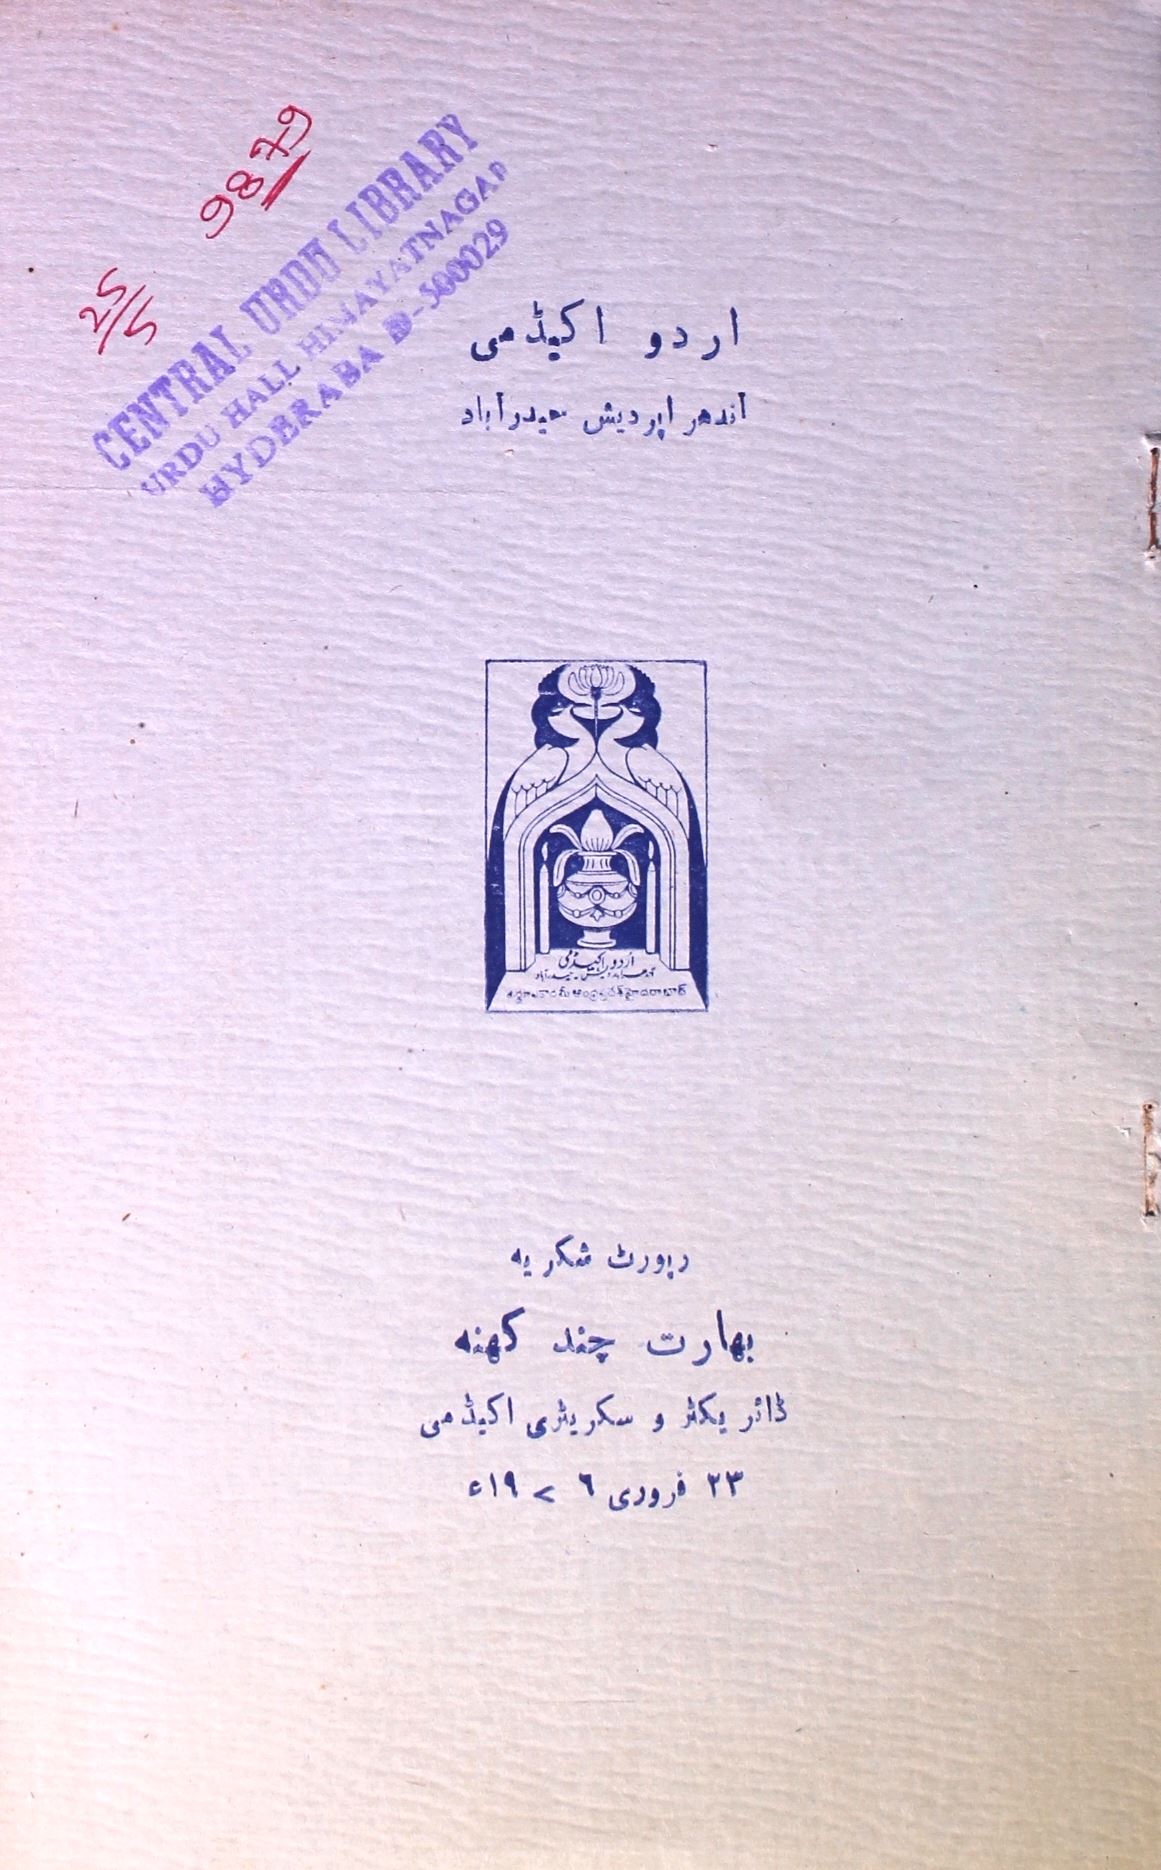 اردو اکیڈمی